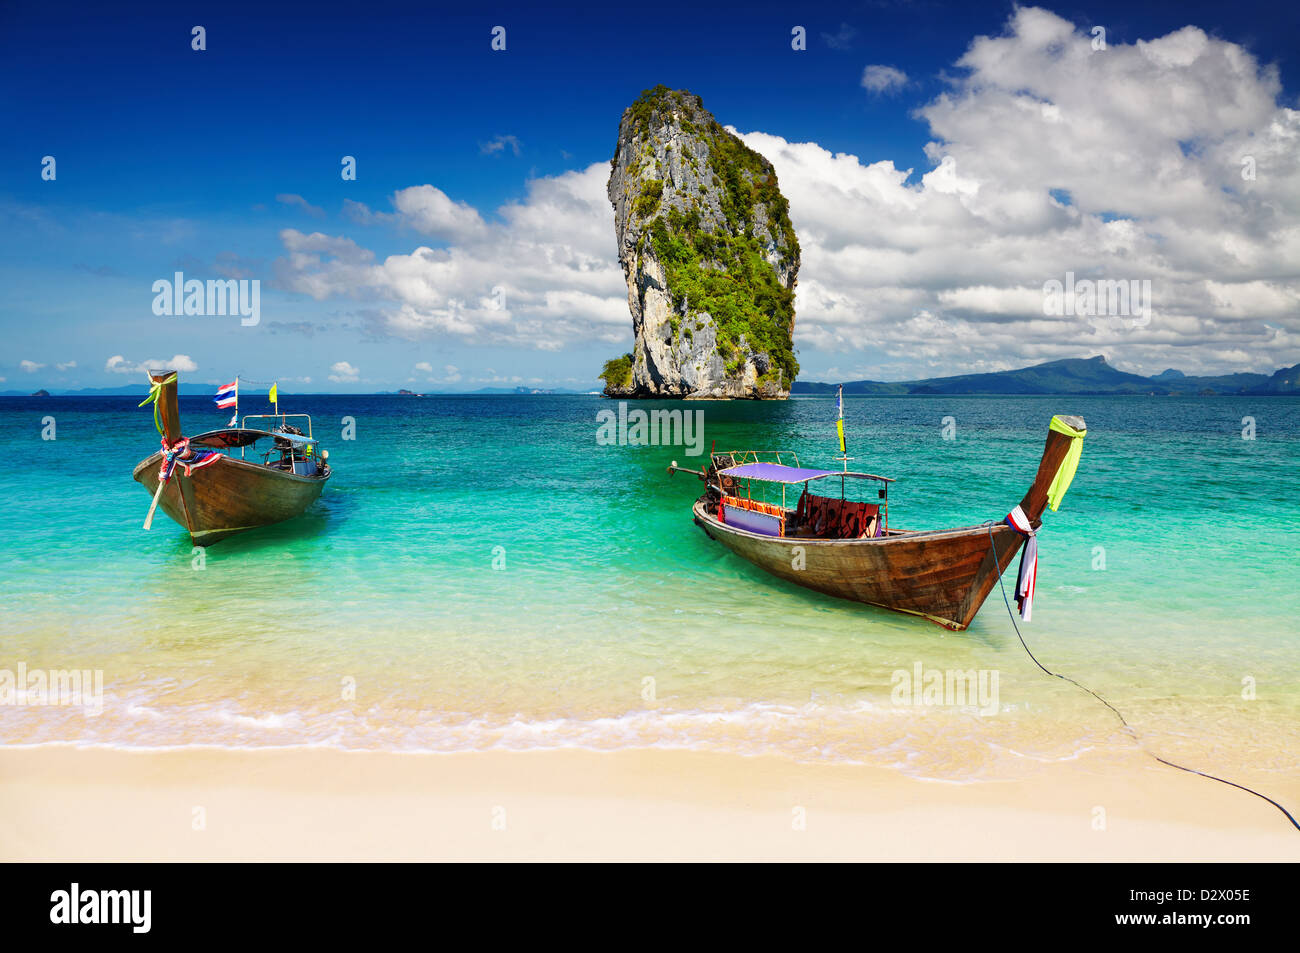 Bateaux à longue queue, la plage tropicale, la mer d'Andaman, Thaïlande Banque D'Images